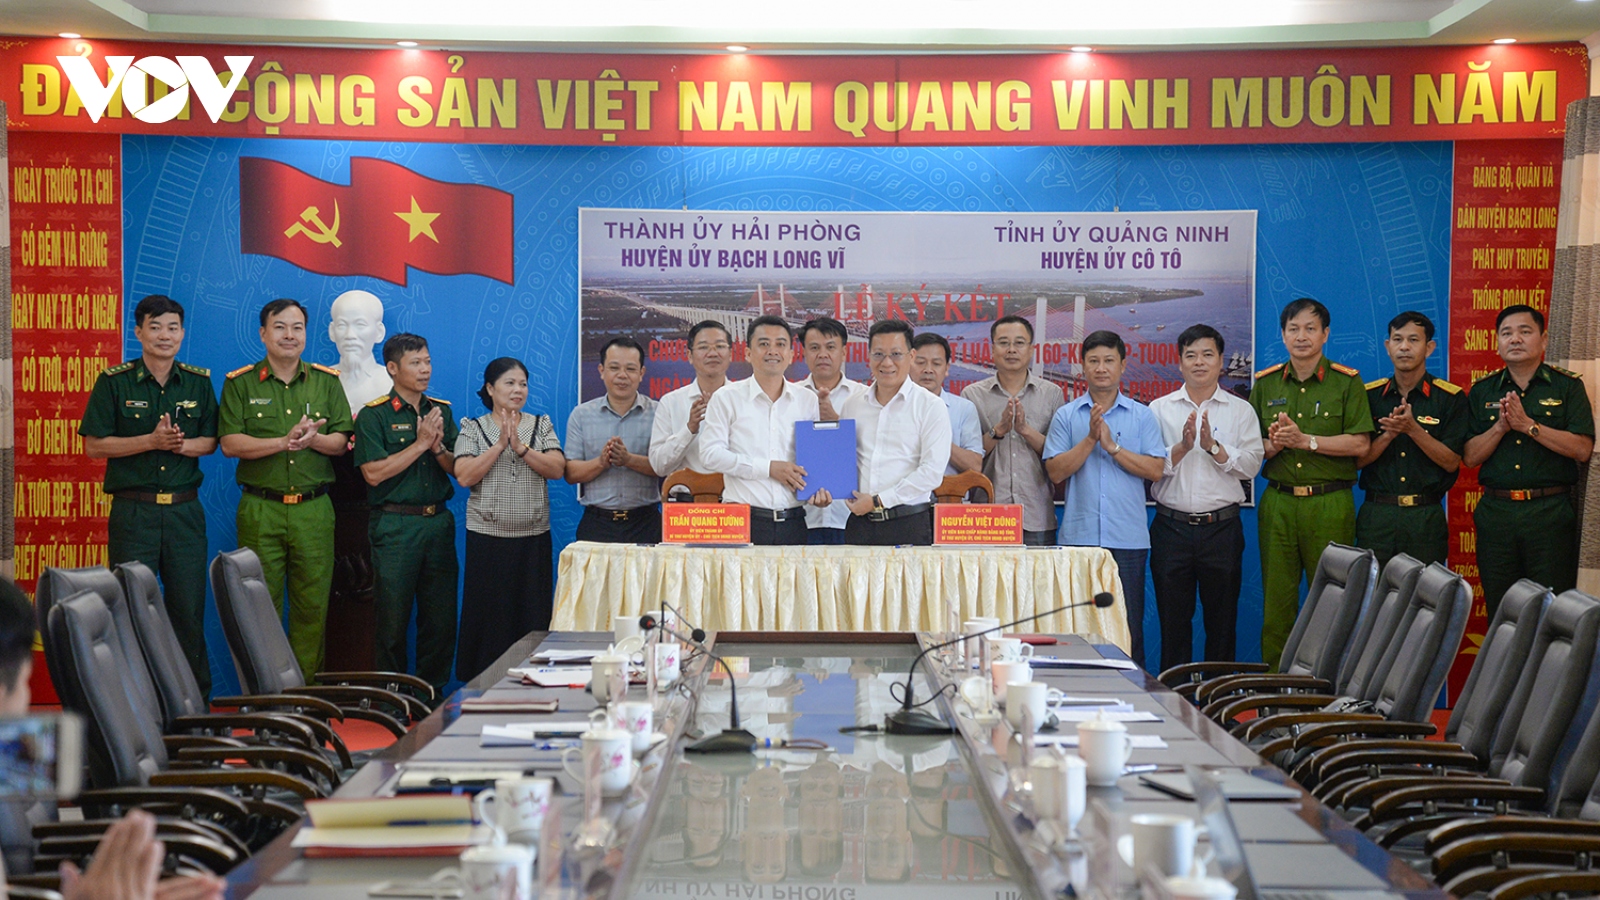 2 huyện đảo Cô Tô (Quảng Ninh) và Bạch Long Vĩ (Hải Phòng) hợp tác phát triển